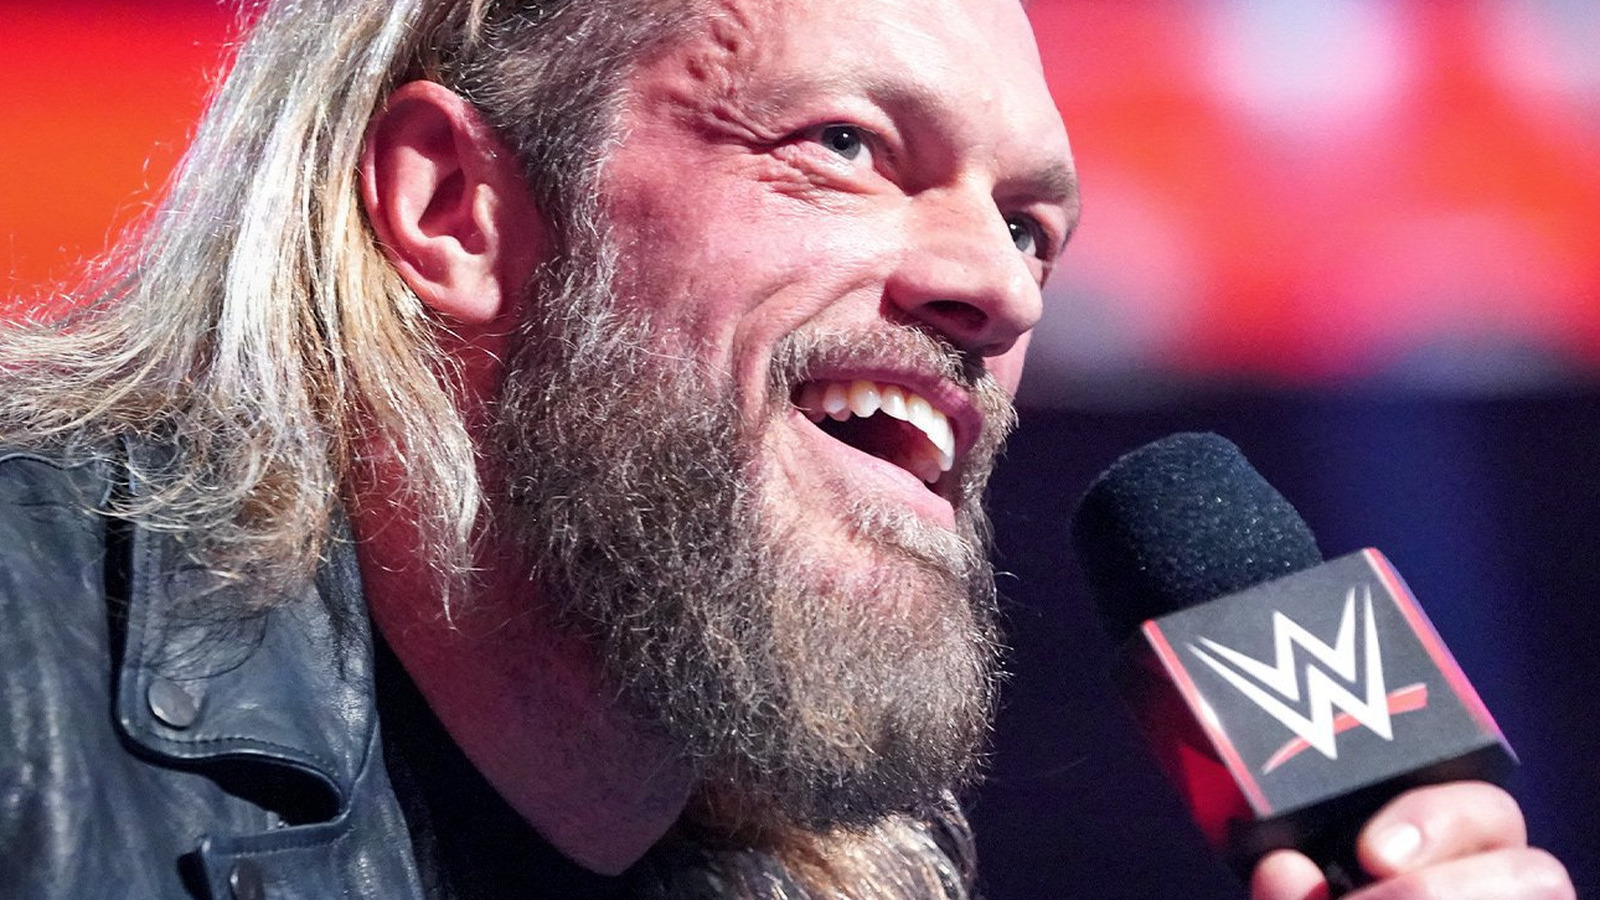 Edge y Kofi Kingston comparten un intercambio de bromas sobre el aniversario del ataque de la Cámara de Eliminación de la WWE